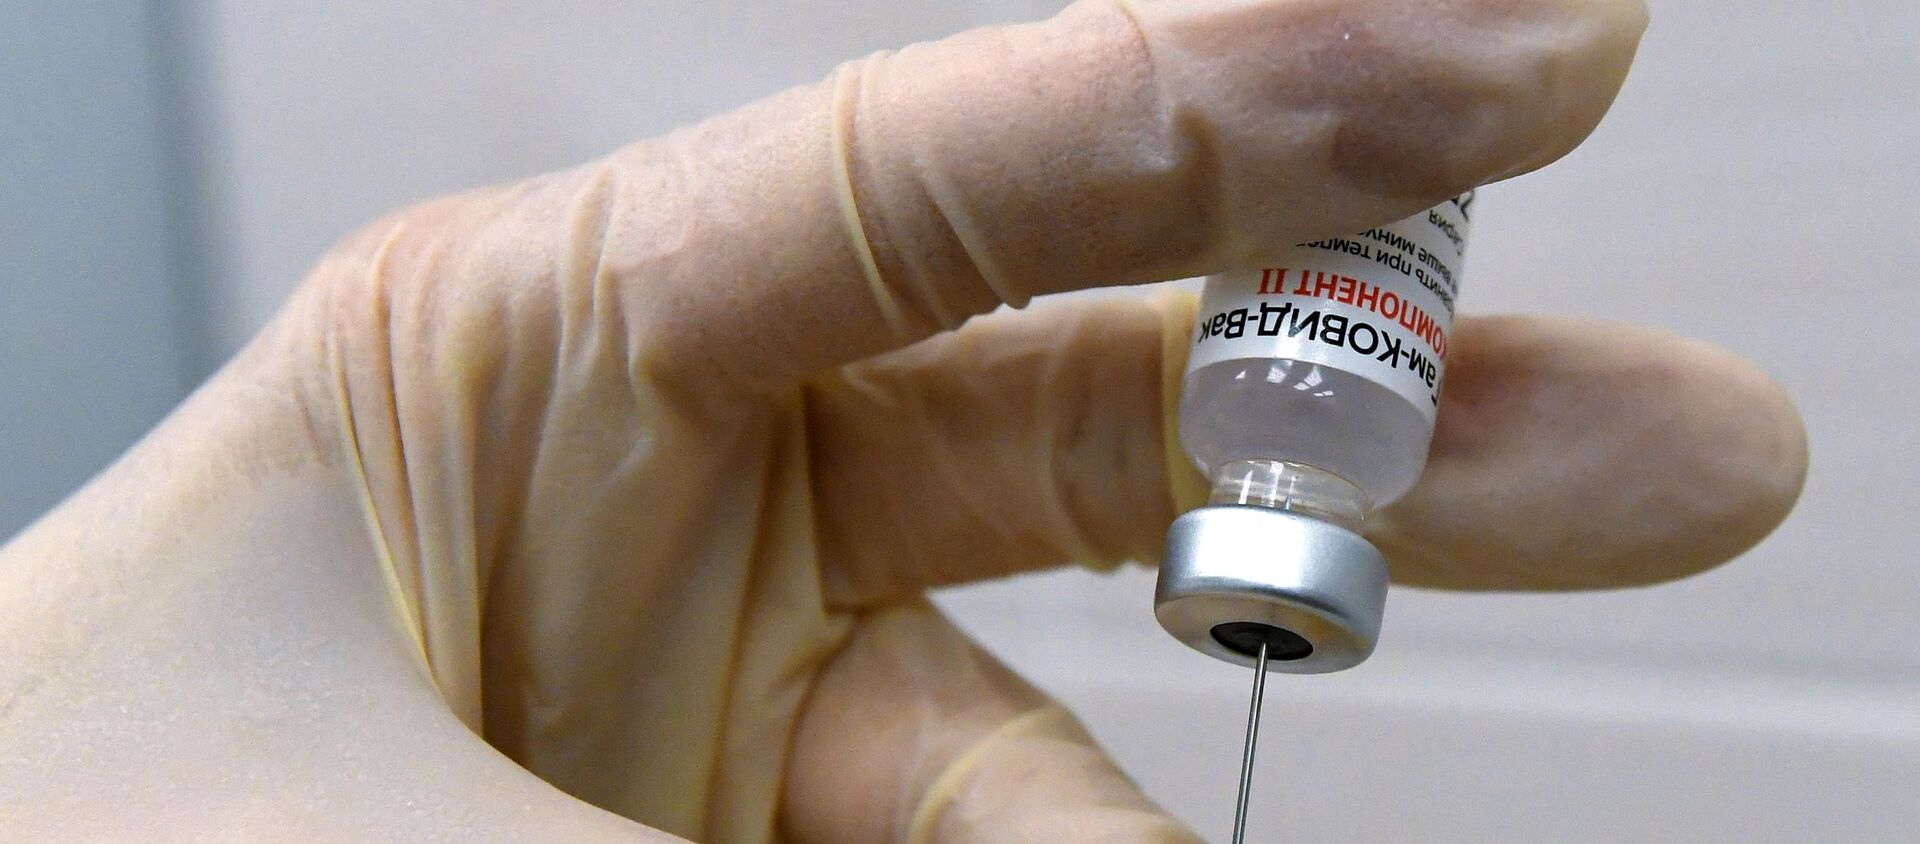 Медсестра набирает в шприц вакцину против COVID-19 Спутник V (Гам-КОВИД-Вак) - Sputnik Lietuva, 1920, 10.02.2021